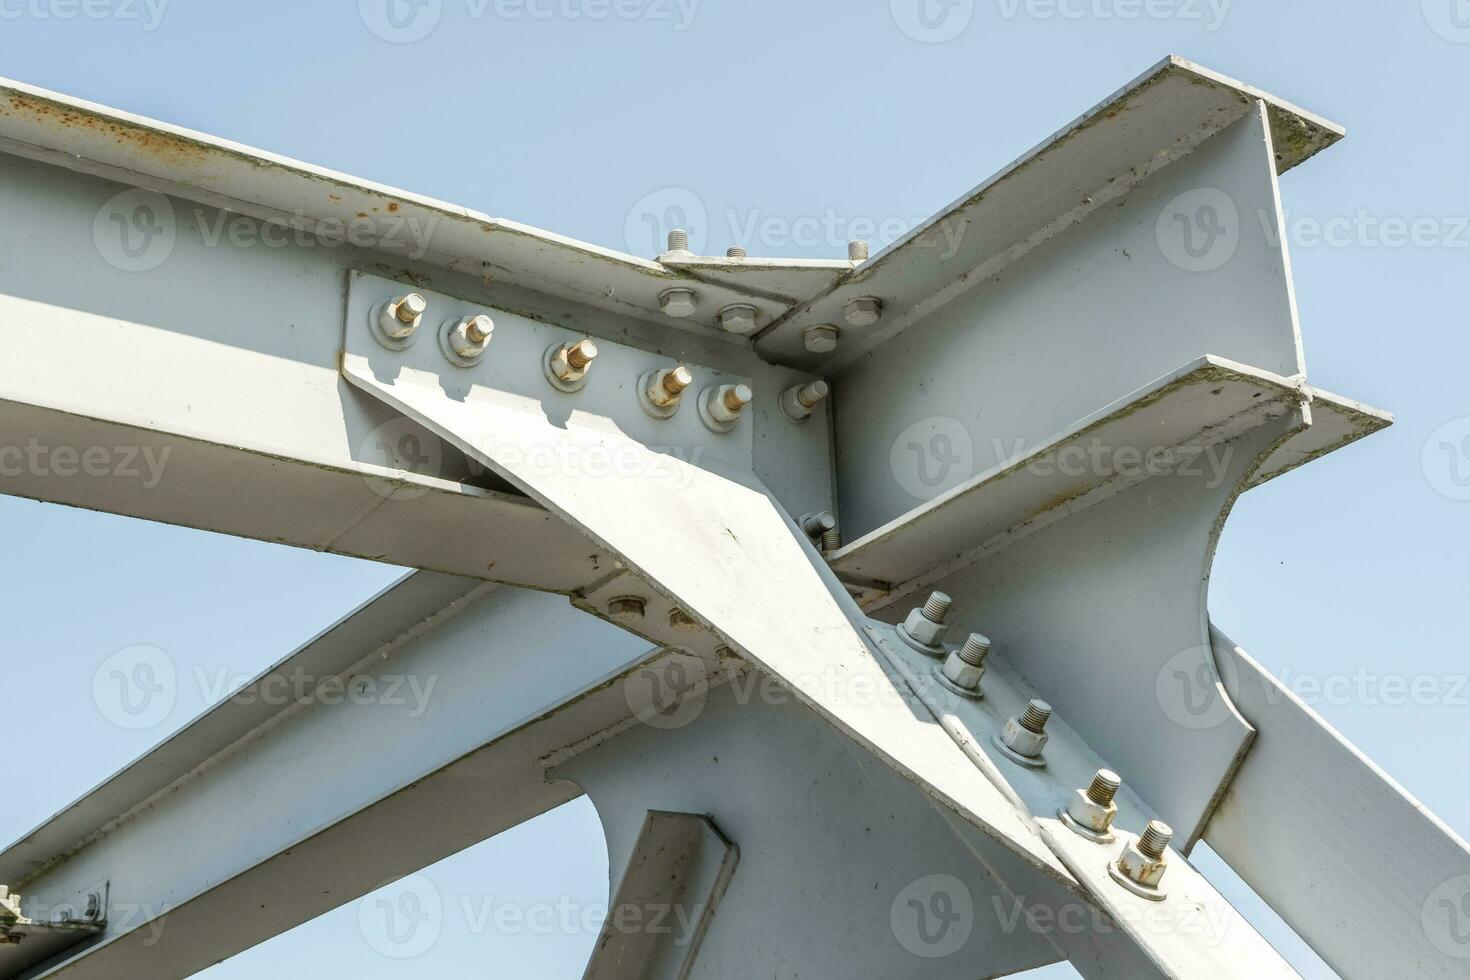 tornillos y nueces en metal platos de acero estructura de pesado deber Derecho travesaño de marco y puente apoyo foto